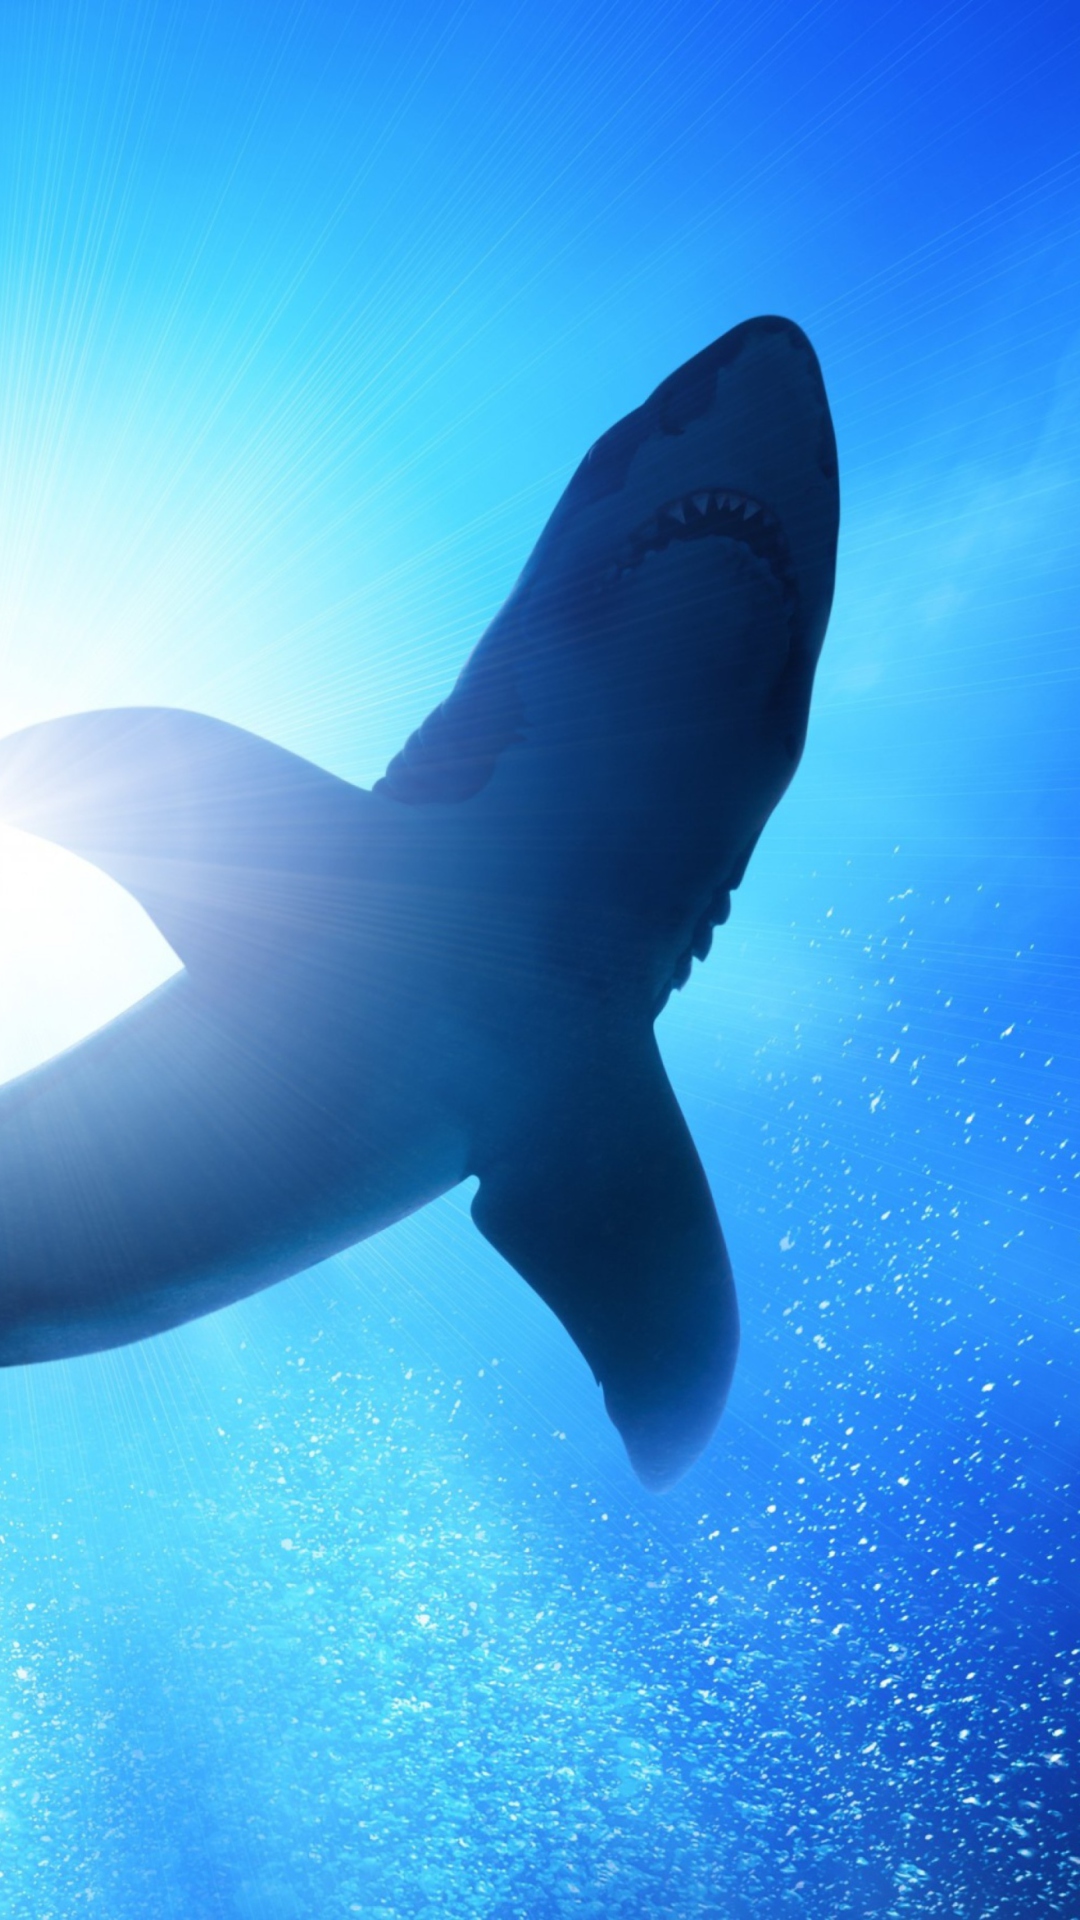 Big Shark wallpaper 1080x1920